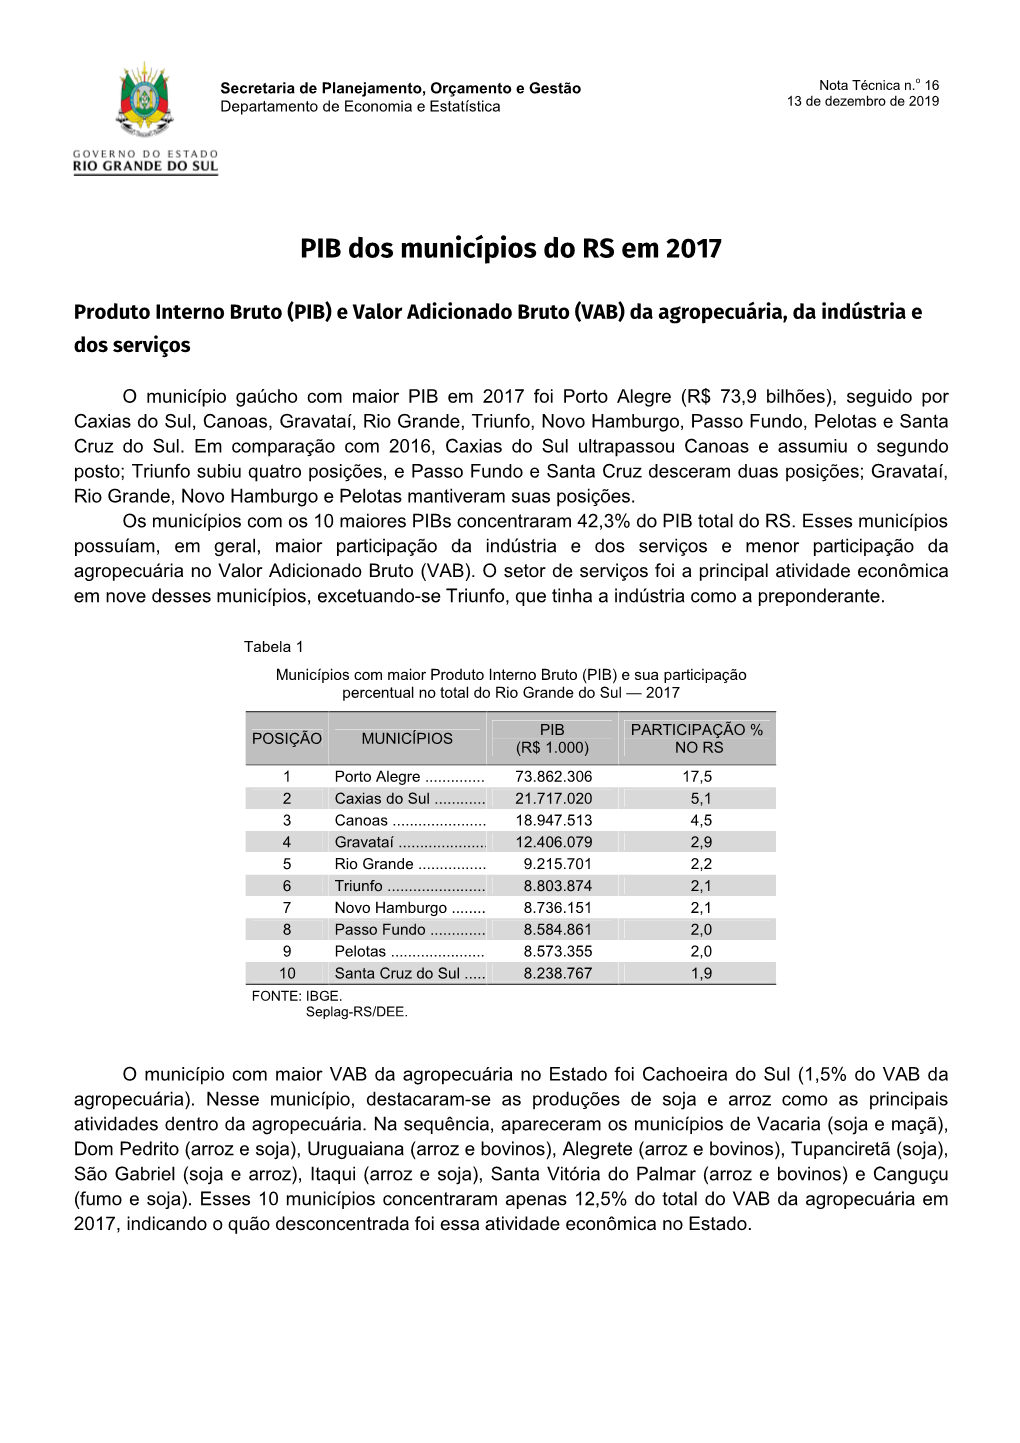 PIB Municipal 2017 Do RS